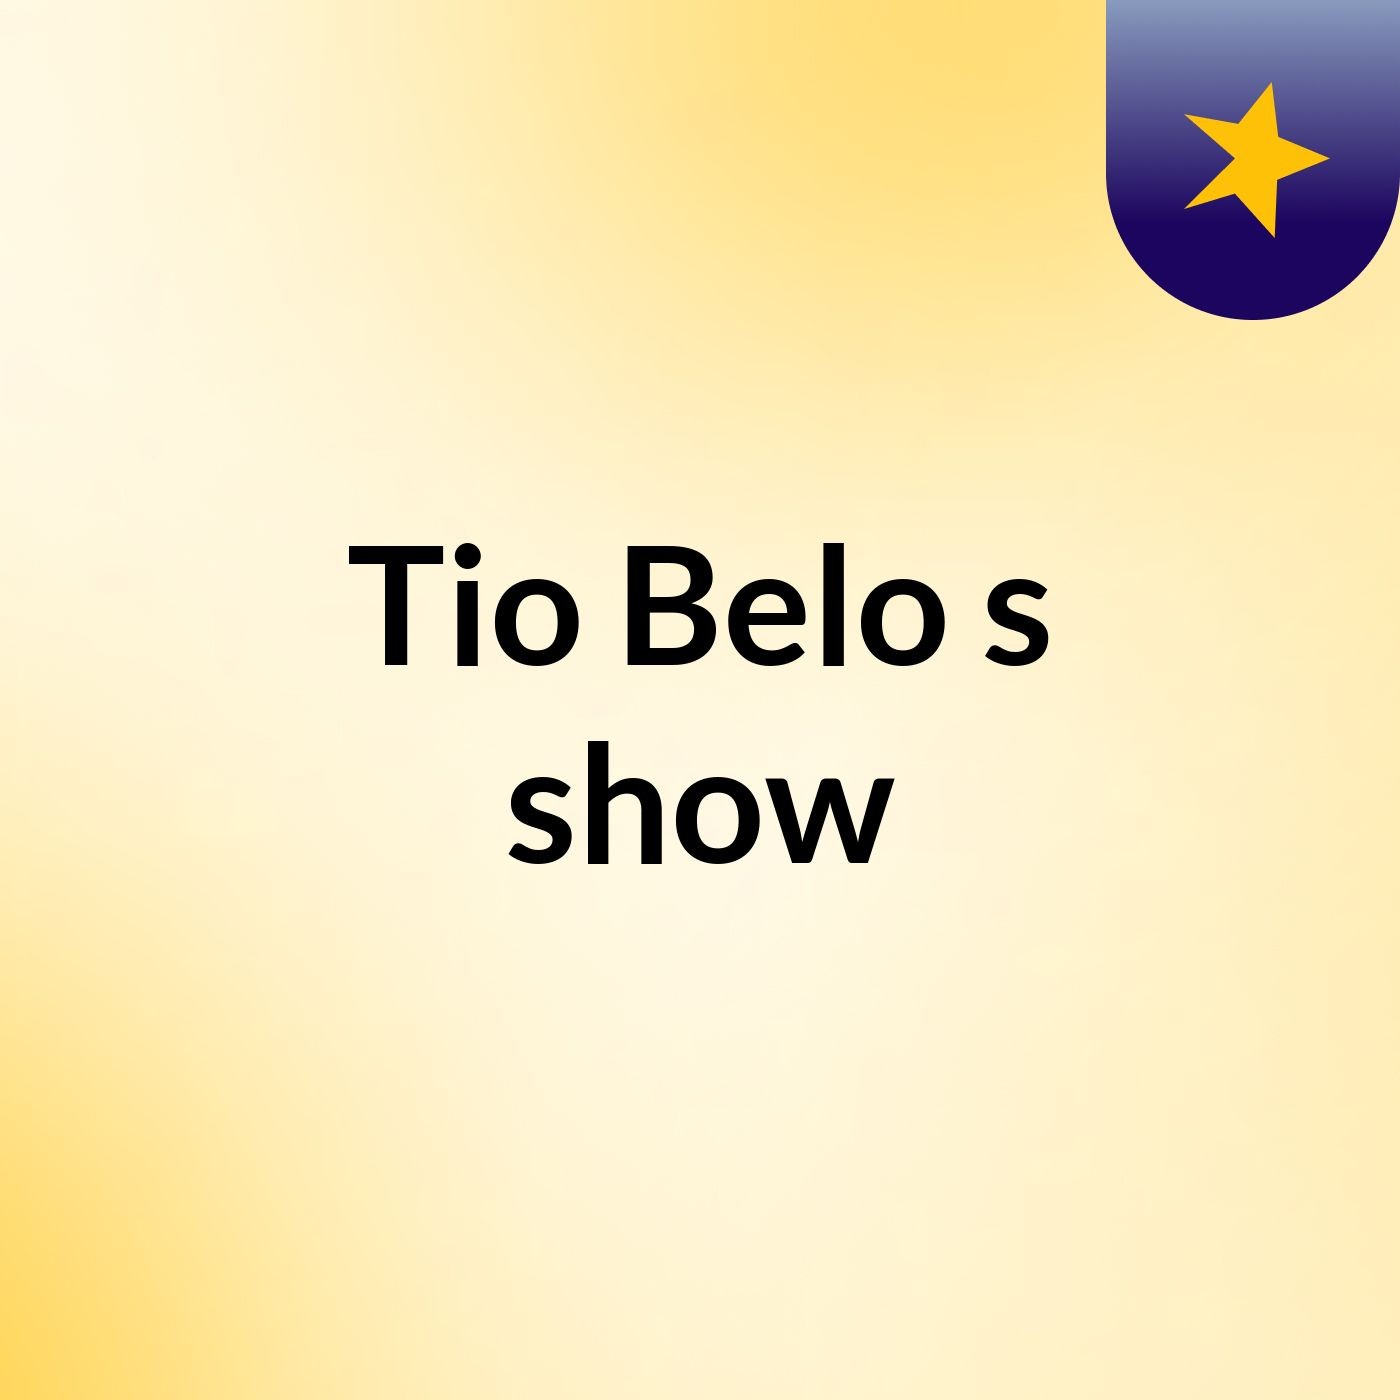 Tio Belo's show